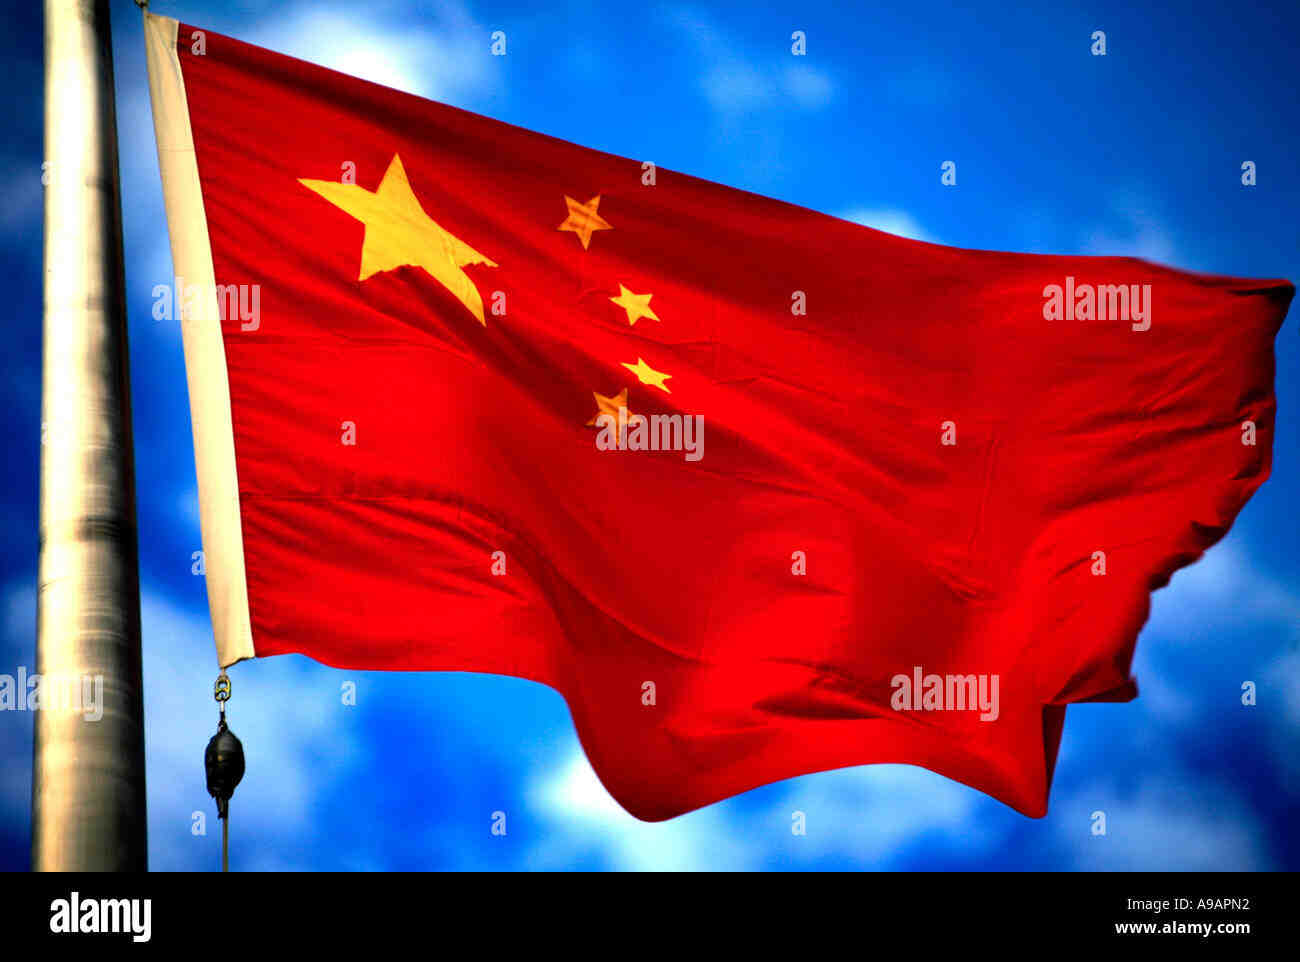 Comment est le drapeau de la Chine ?